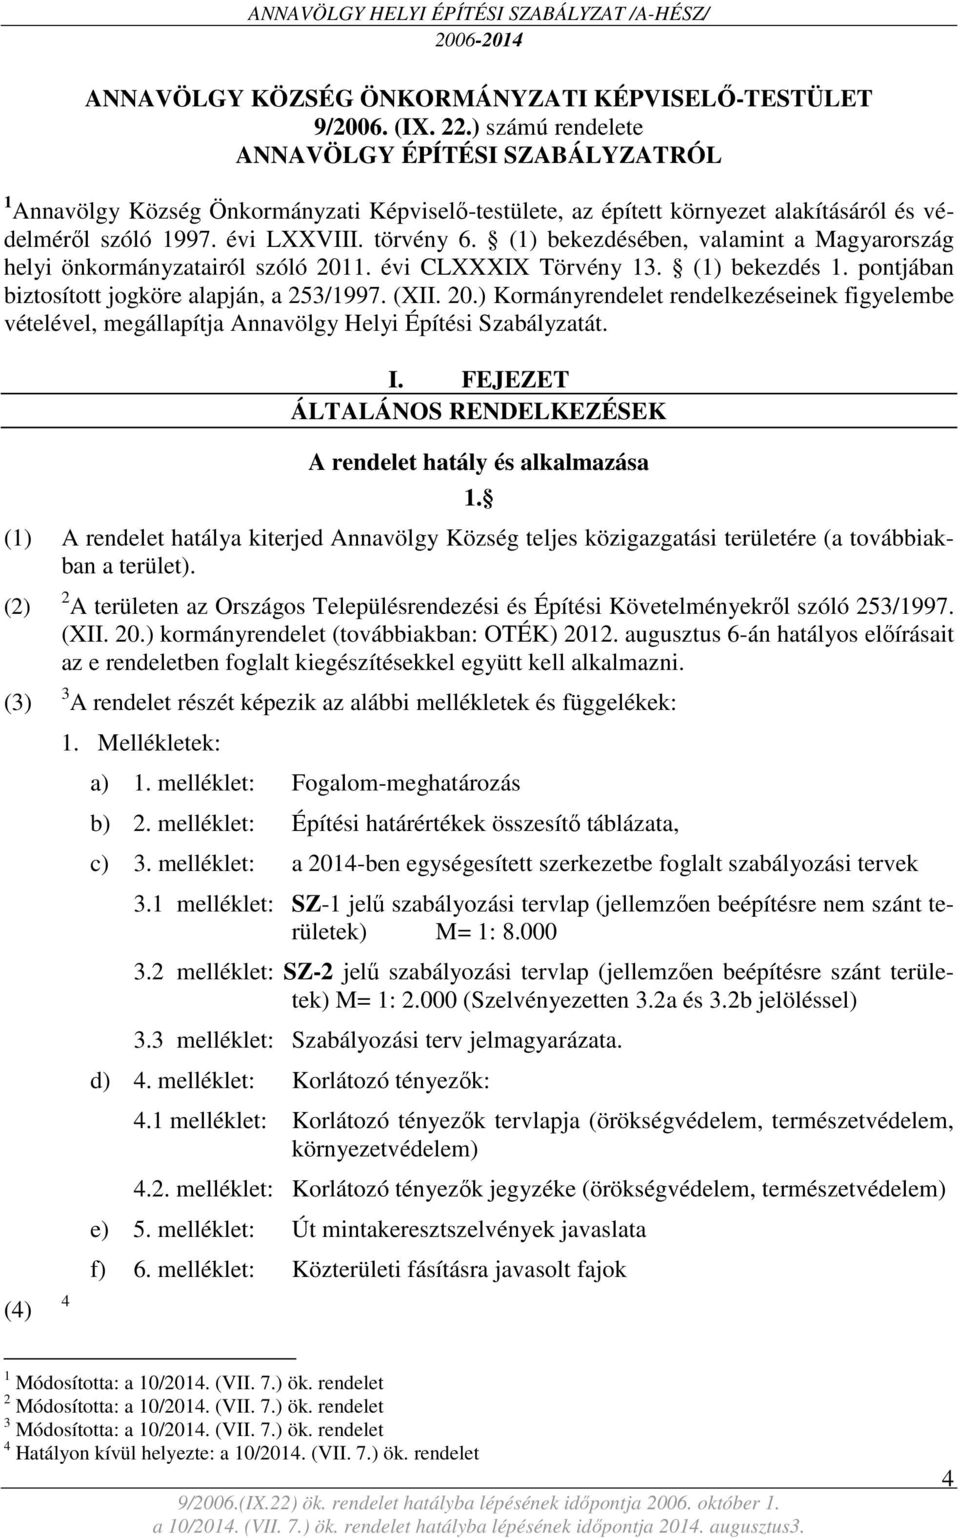 (1) bekezdésében, valamint a Magyarország helyi önkormányzatairól szóló 2011. évi CLXXXIX Törvény 13. (1) bekezdés 1. pontjában biztosított jogköre alapján, a 253/1997. (XII. 20.) Kormányrendelet rendelkezéseinek figyelembe vételével, megállapítja Annavölgy Helyi Építési Szabályzatát.